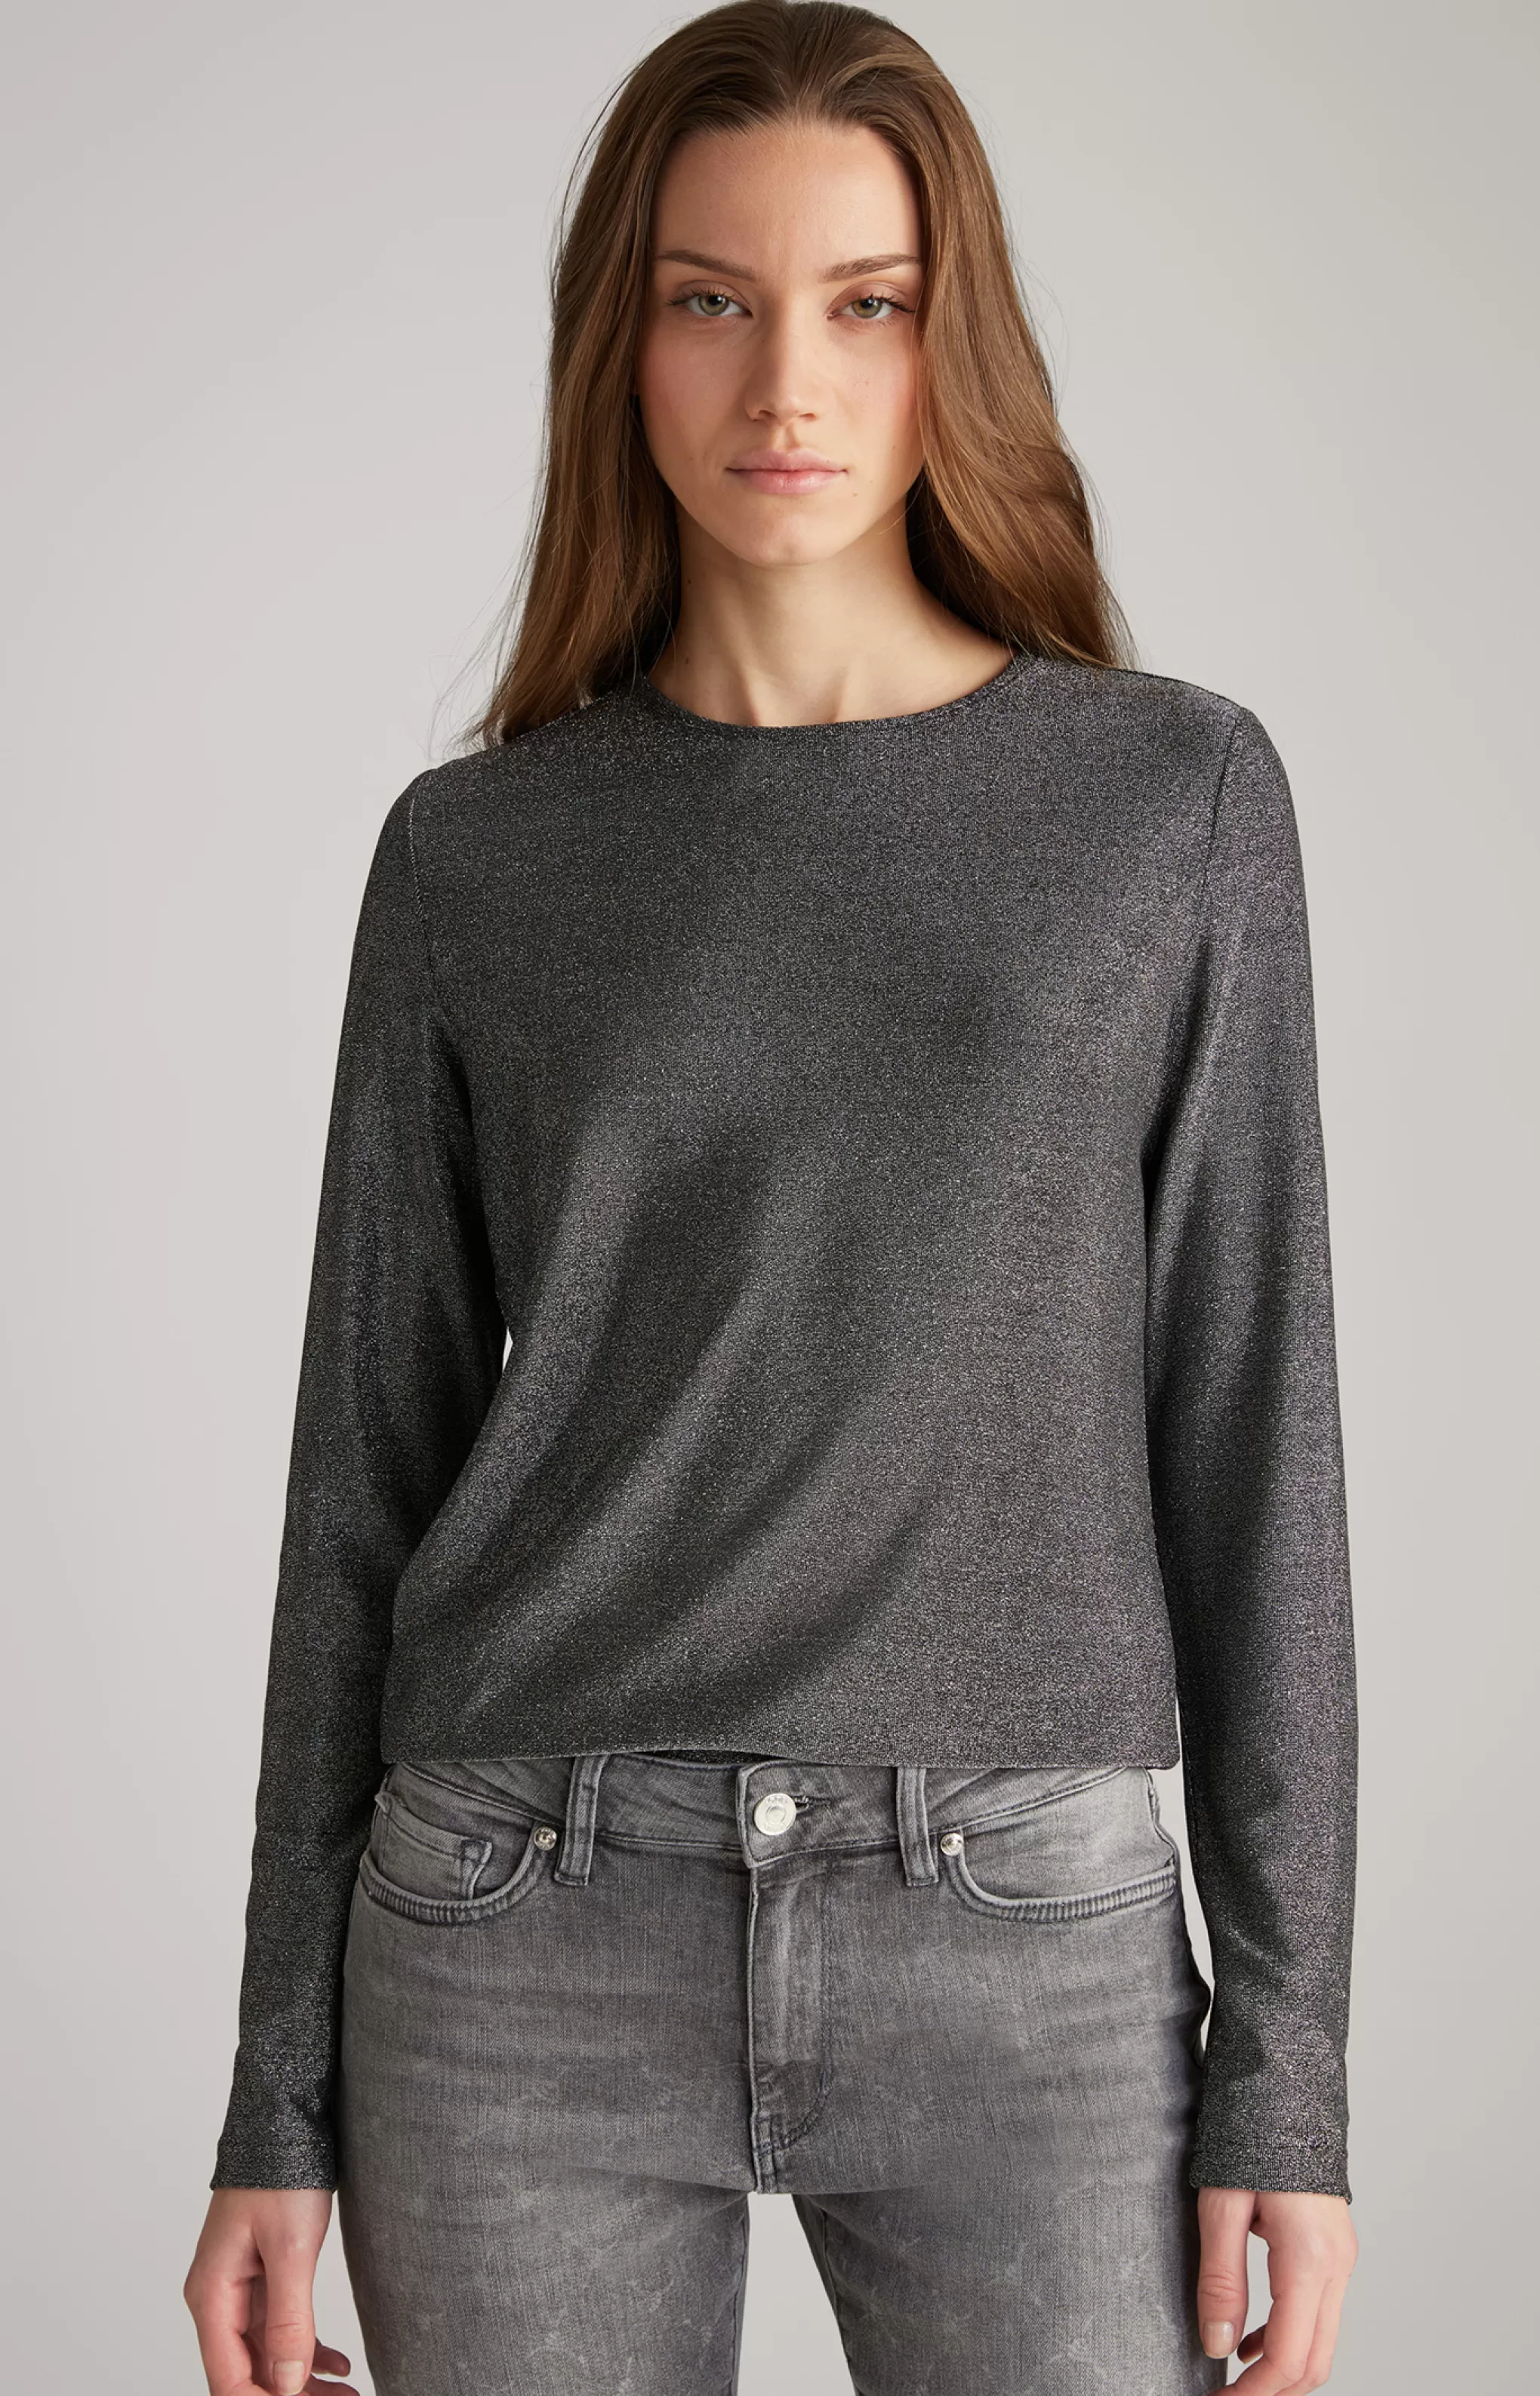 Shirts & Sweats | Blouses | Clothing*JOOP Shirts & Sweats | Blouses | Clothing Lurex Blouse in Grey Glitter